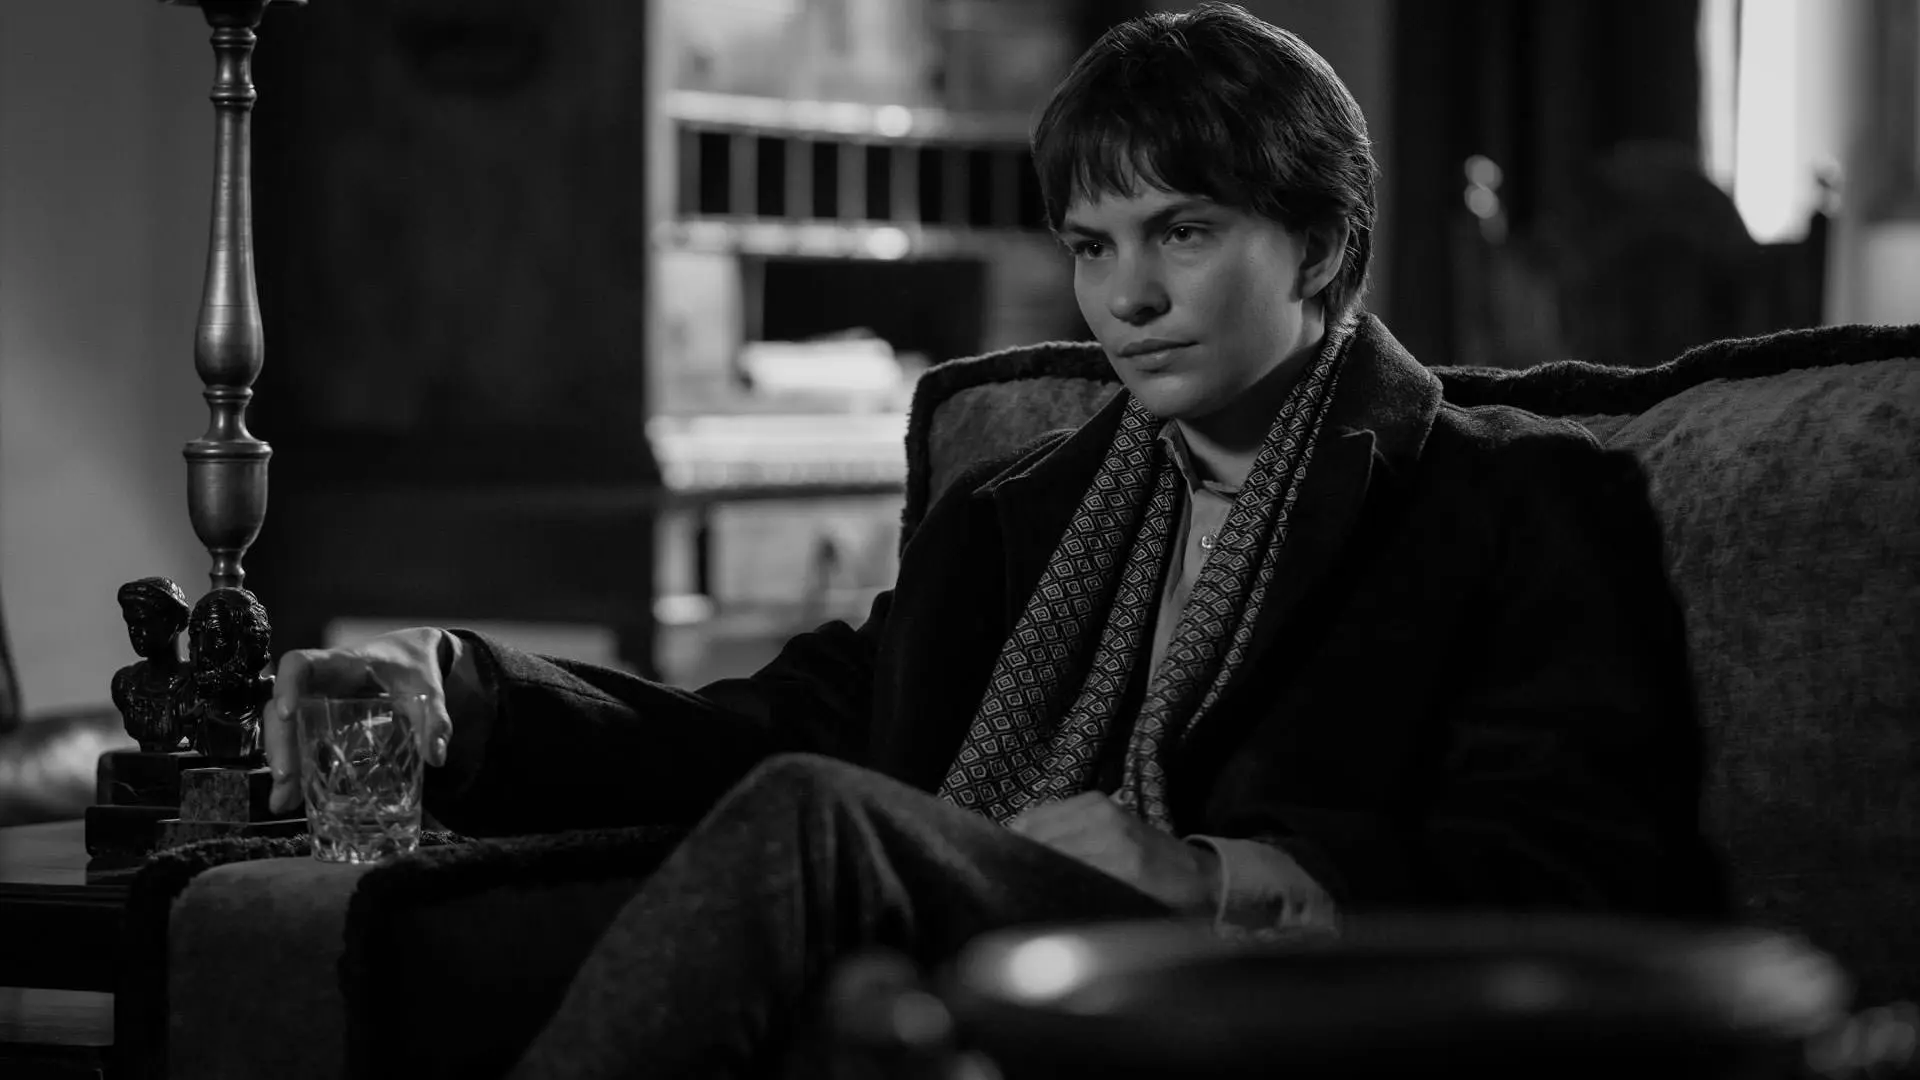 الیوت سامر با یک لیوان در دست در یک عکس سیاه و سفید از سریال ریپلی استیون زیلیان نشسته است.